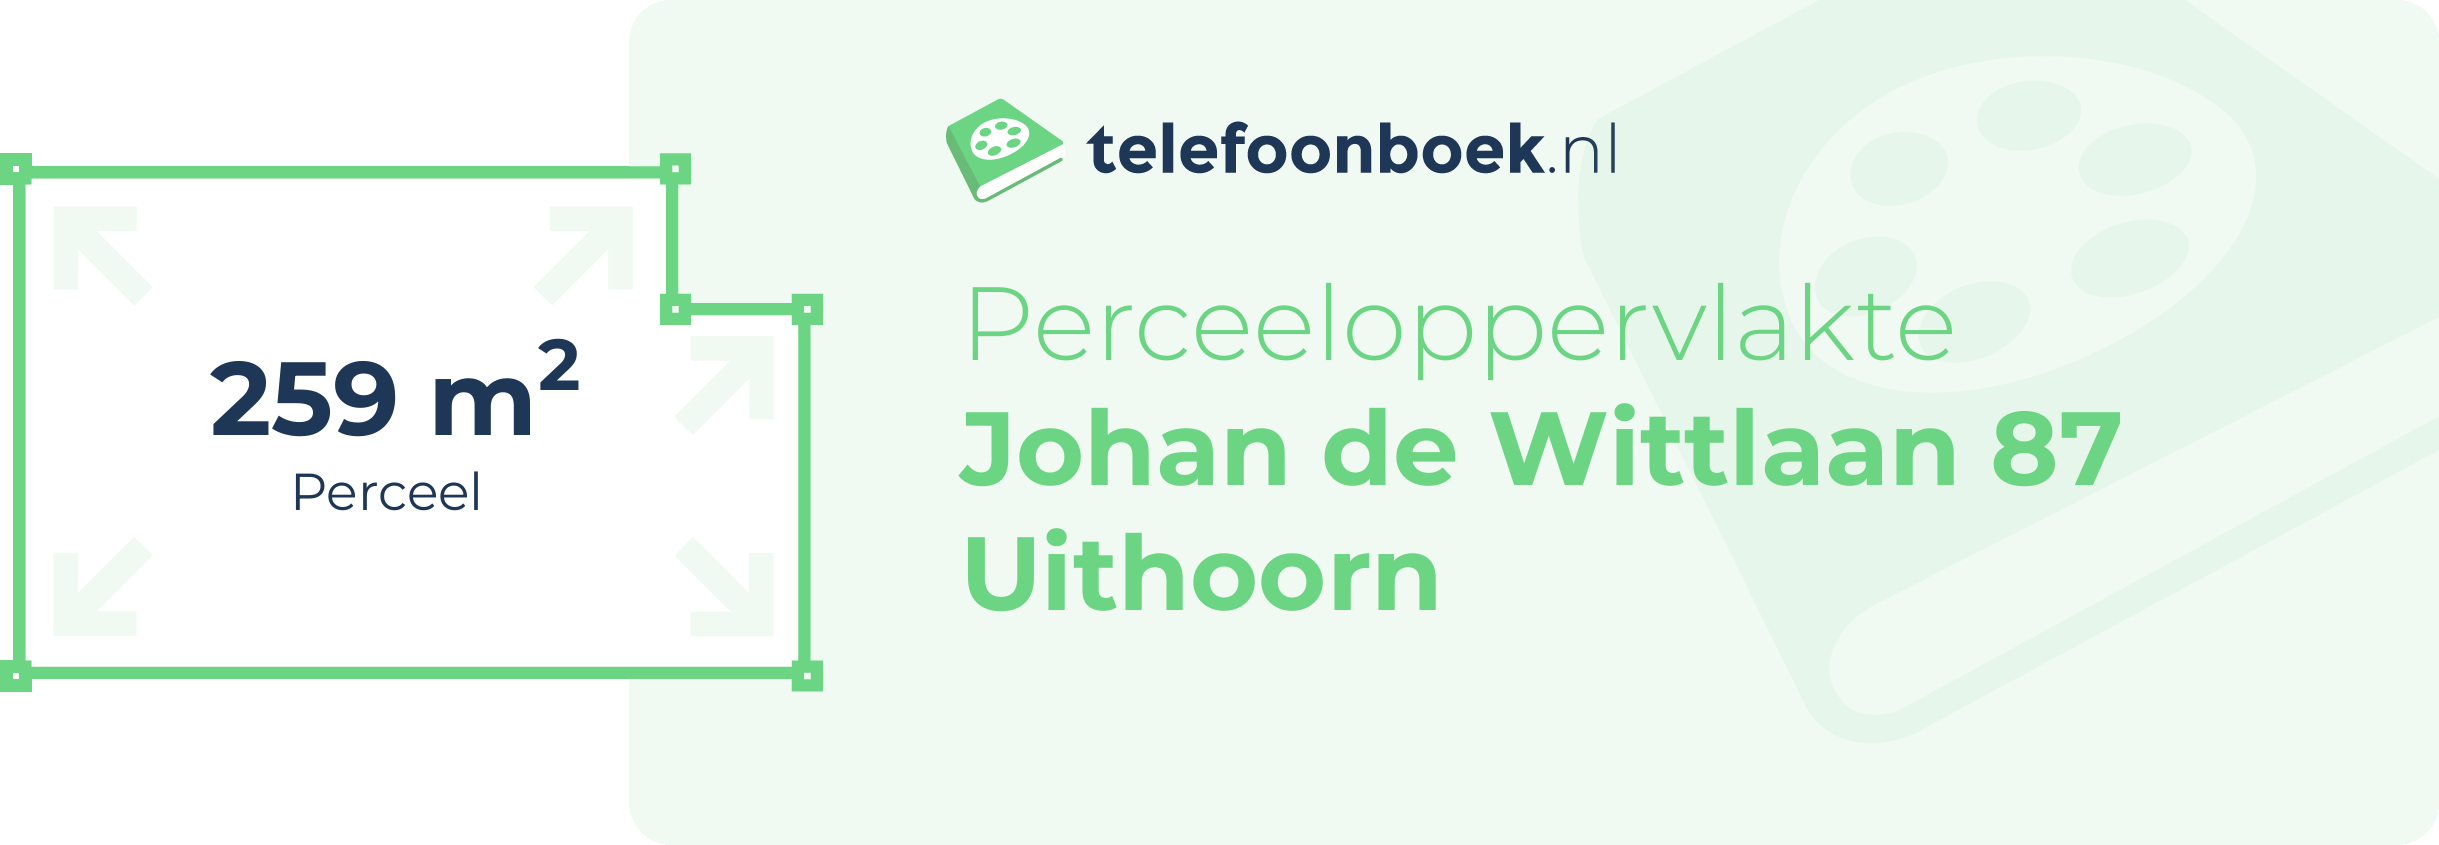 Perceeloppervlakte Johan De Wittlaan 87 Uithoorn